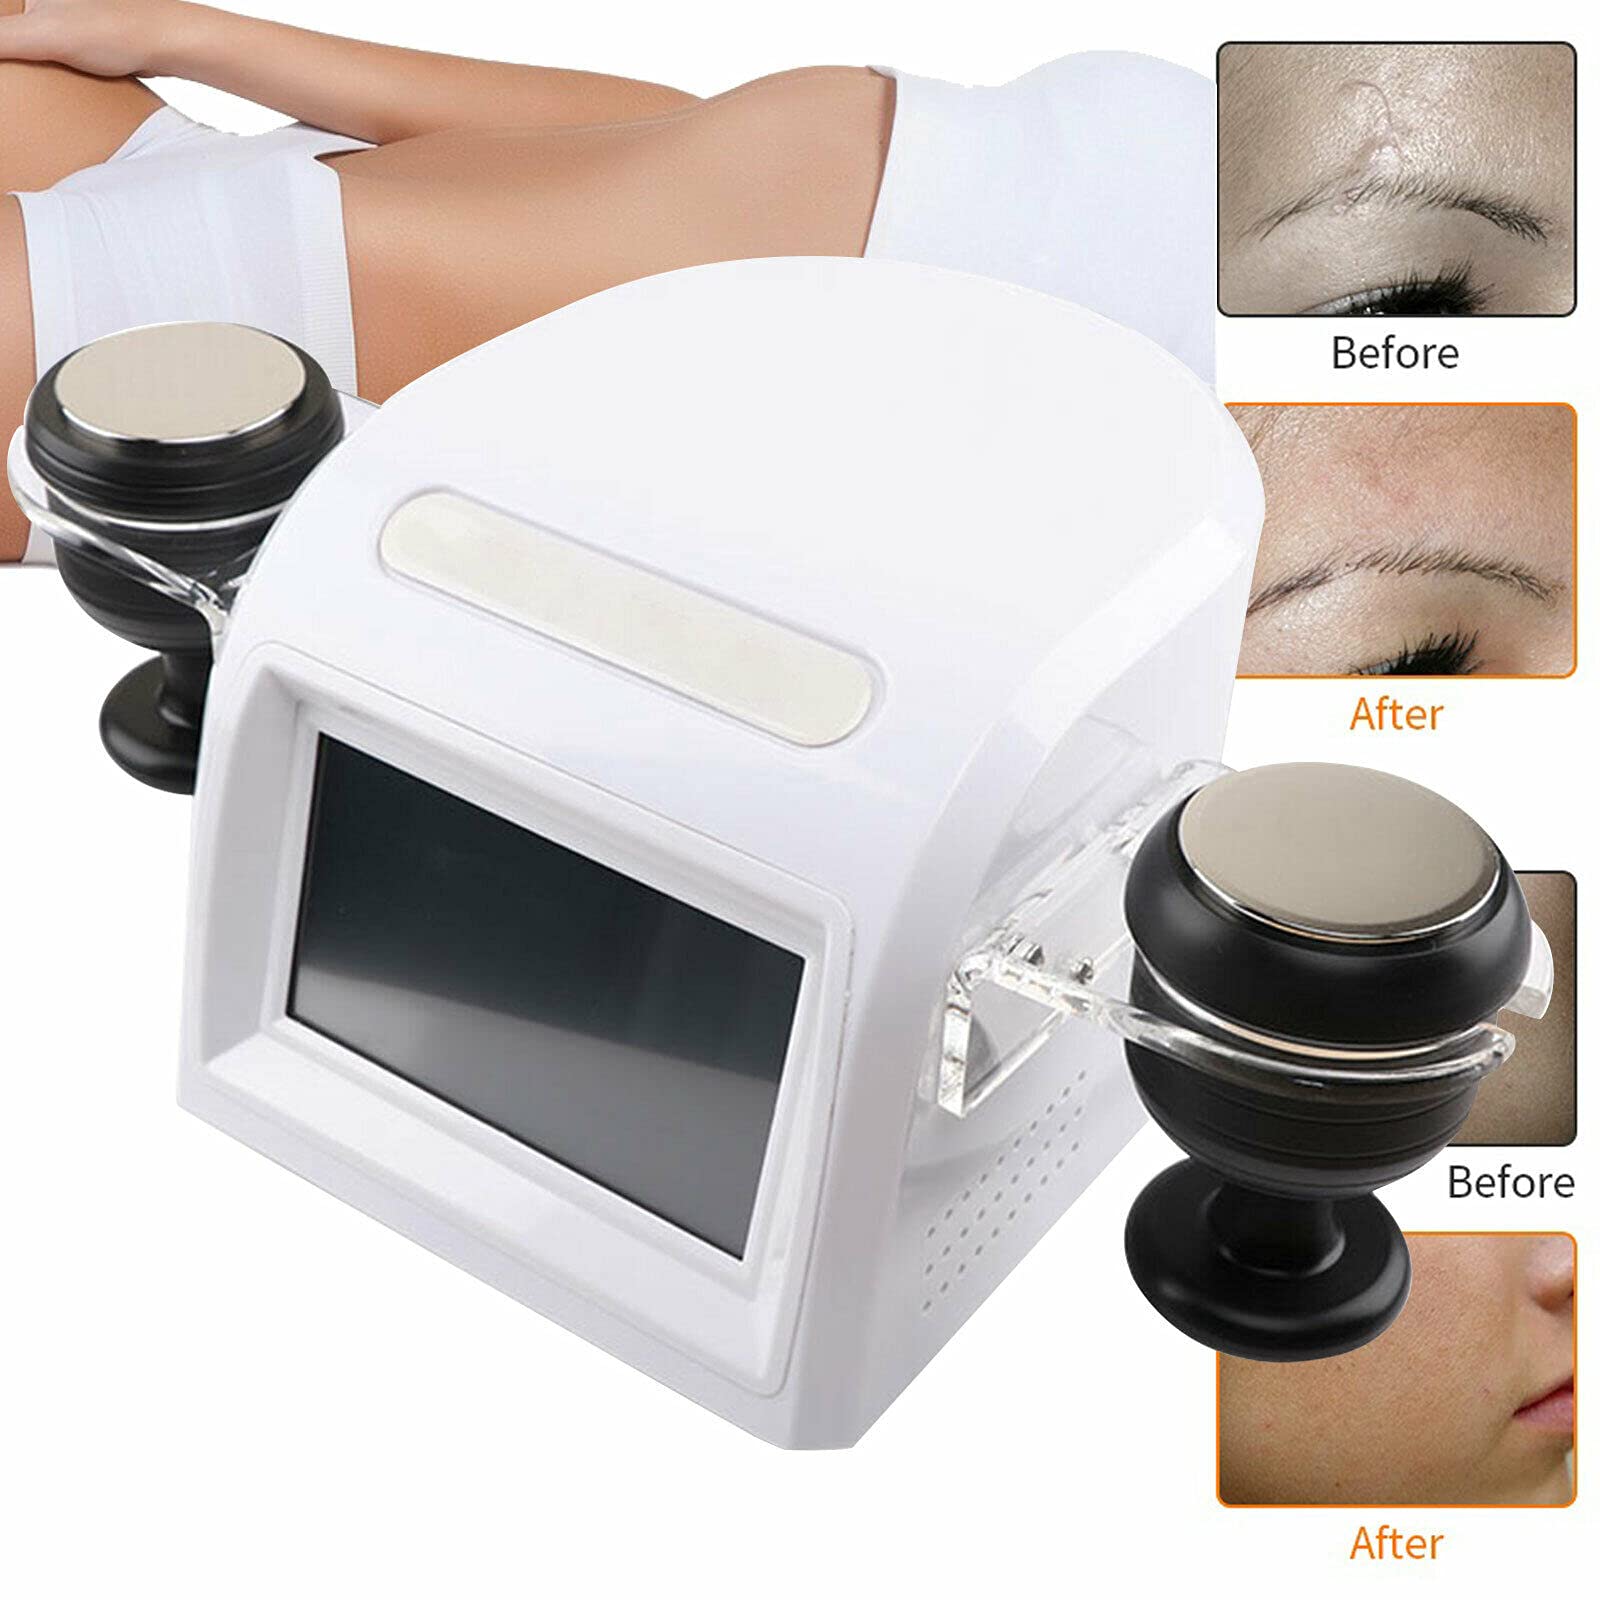 Dispositif de Beauté Radiofréquence avec Massage sous Vide Cavitation Ultrasonique 